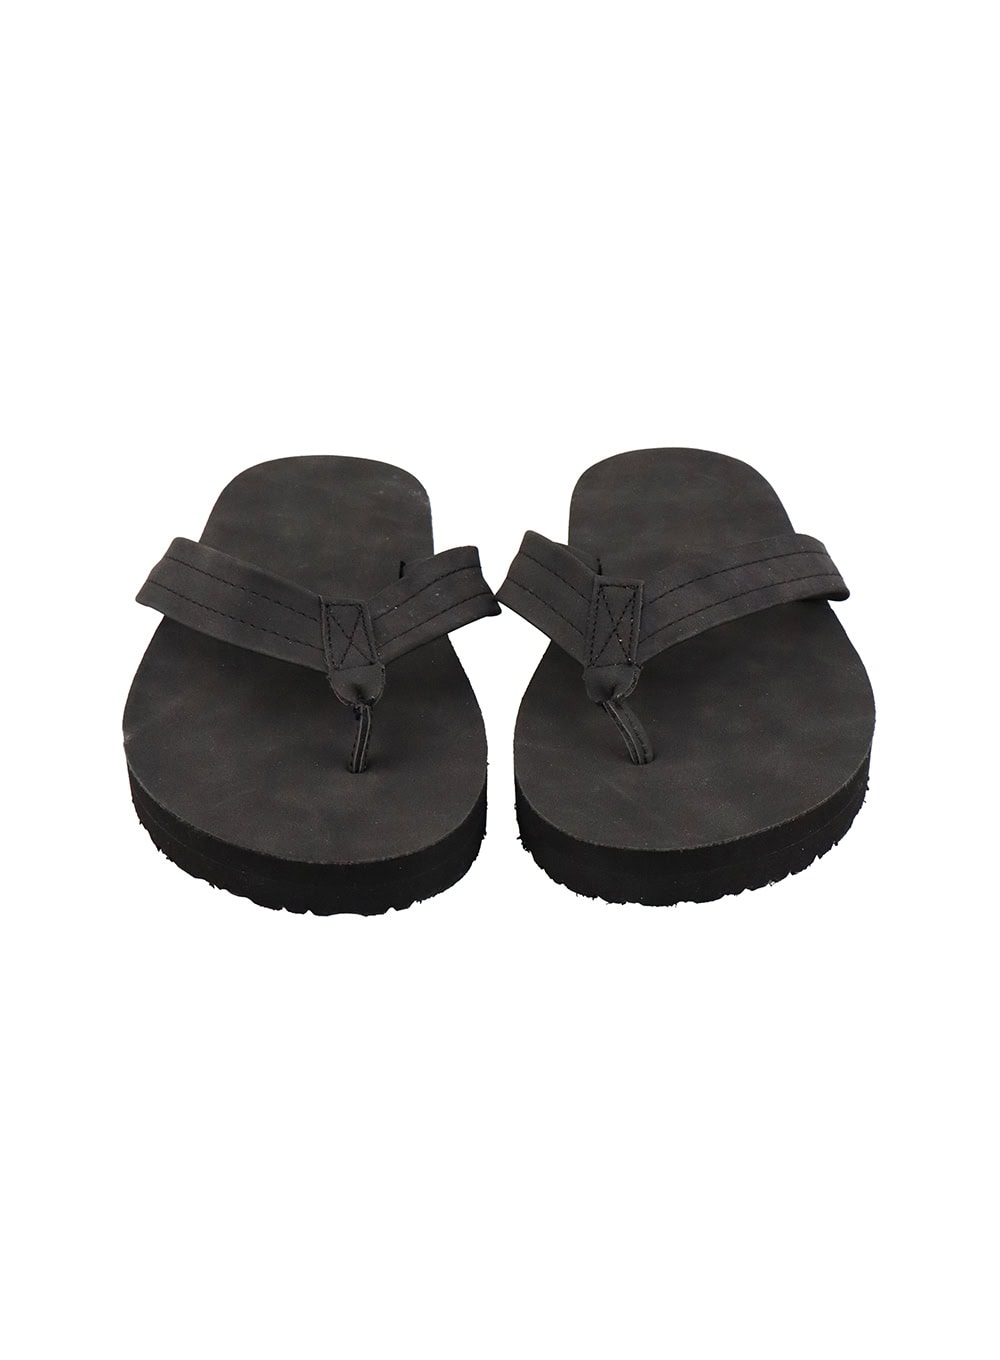 mens-faux-leather-sandals-iu405 / Black